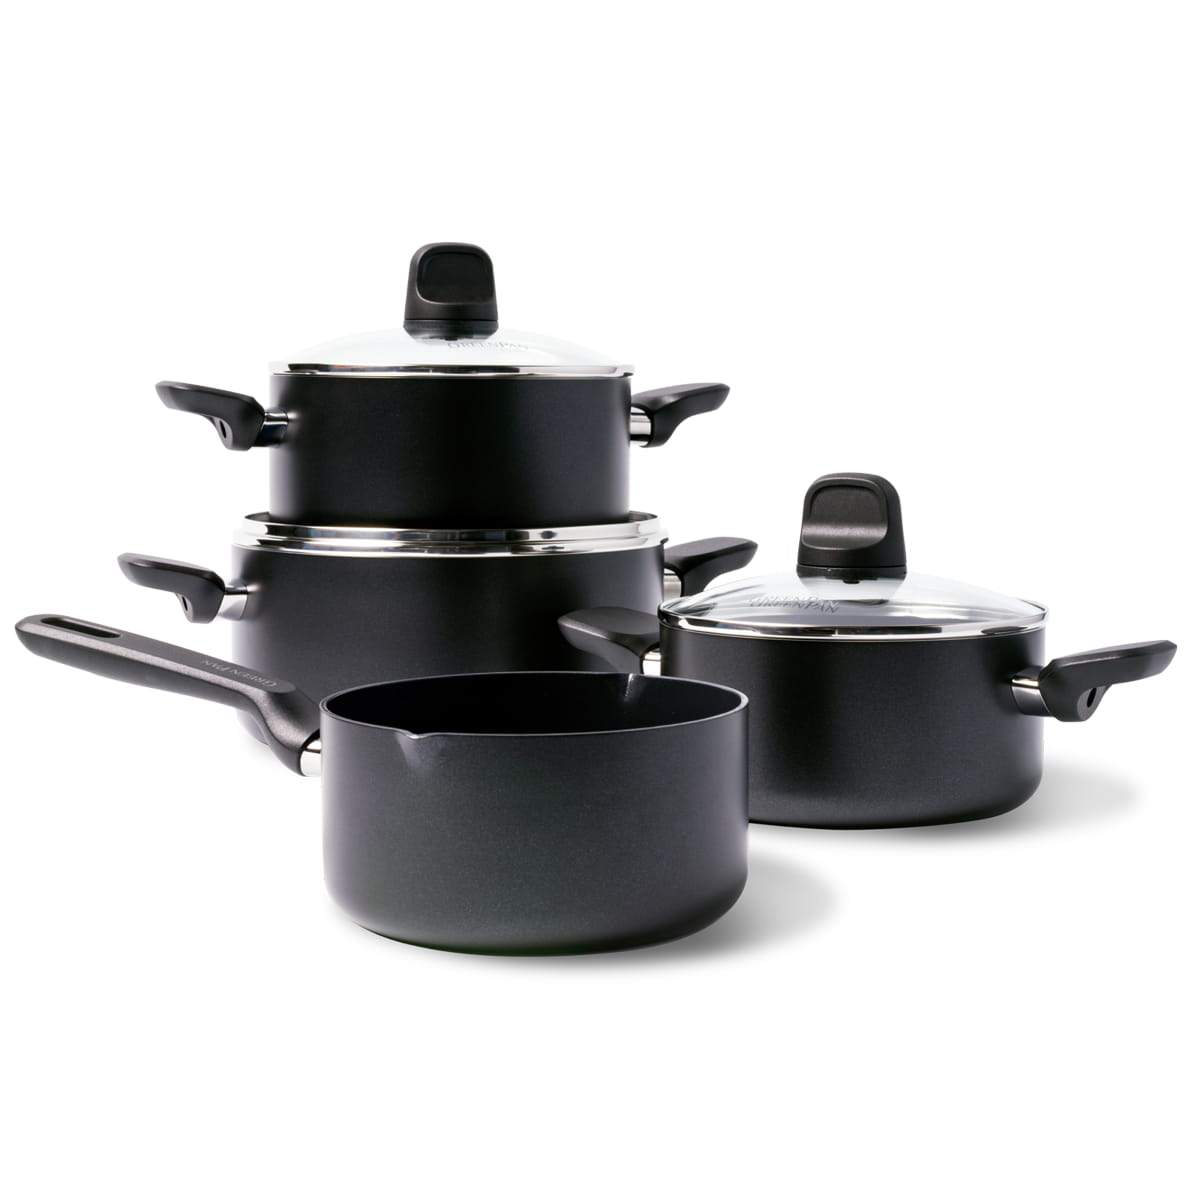 CC001666-001 - Memphis 7pc Cookware Sets, Black - Product Image 1